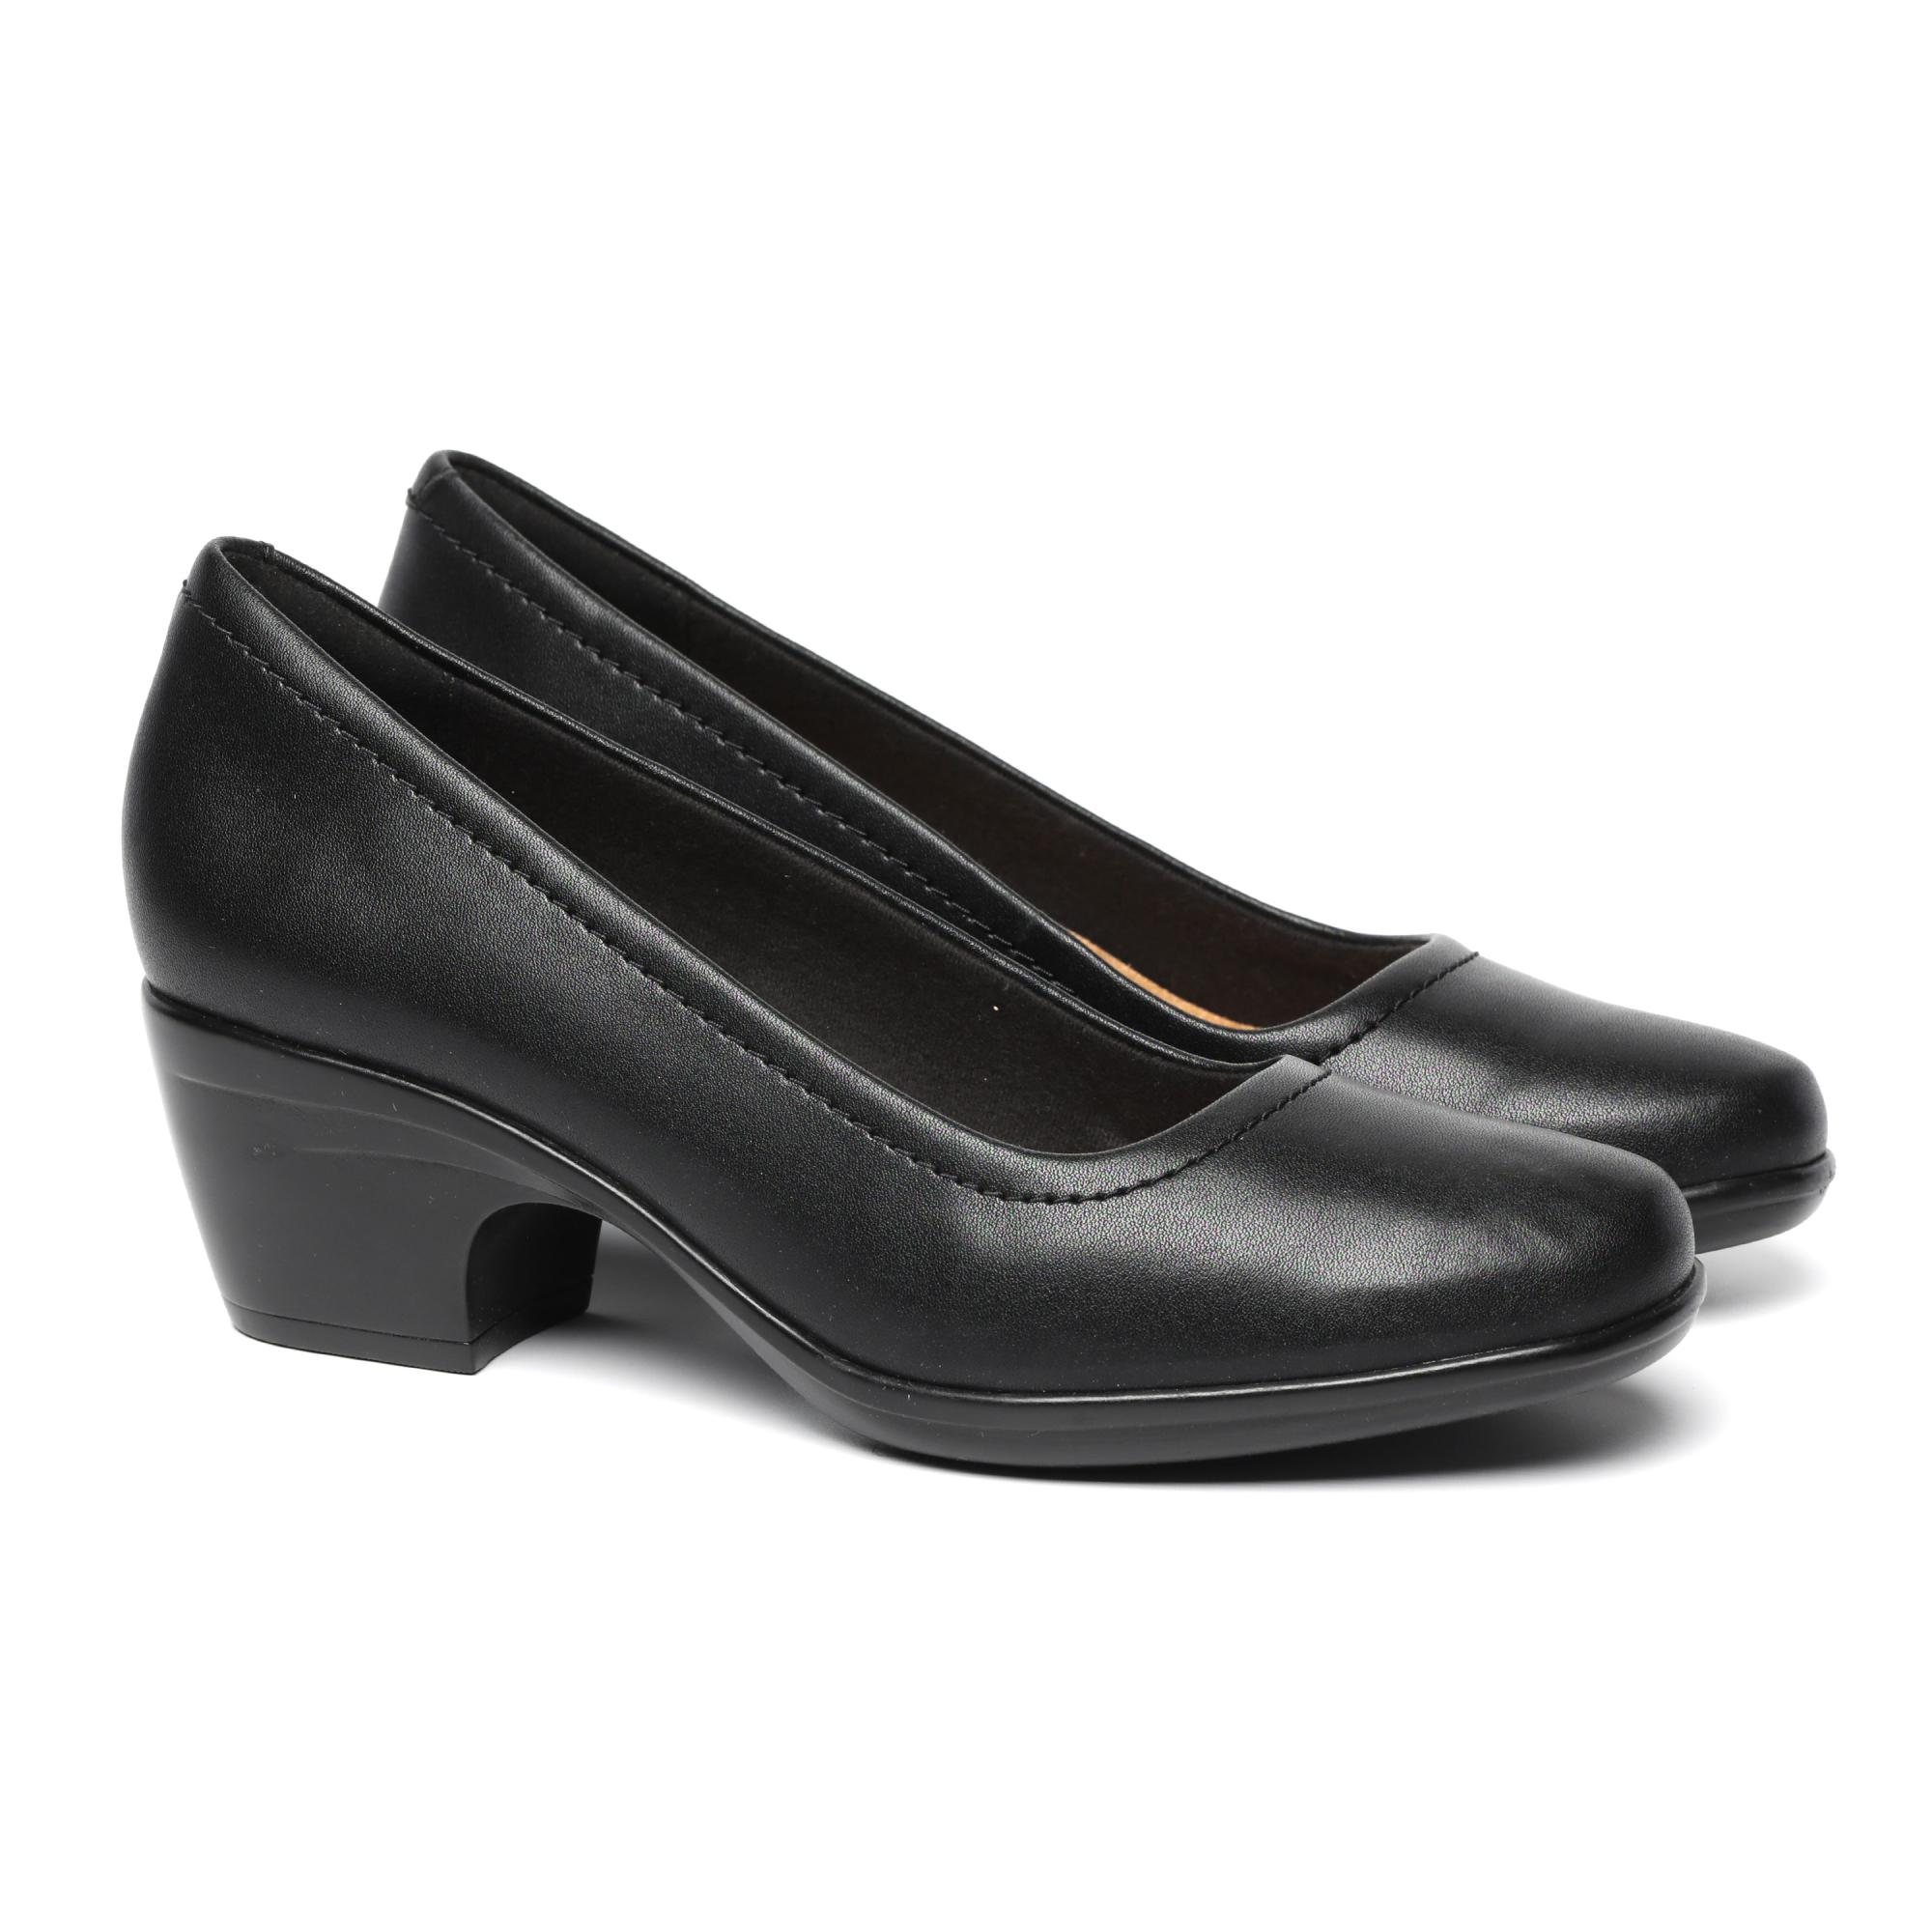 Женские туфли-лодочки Clarks, черные, цвет черный, размер 39 - фото 1